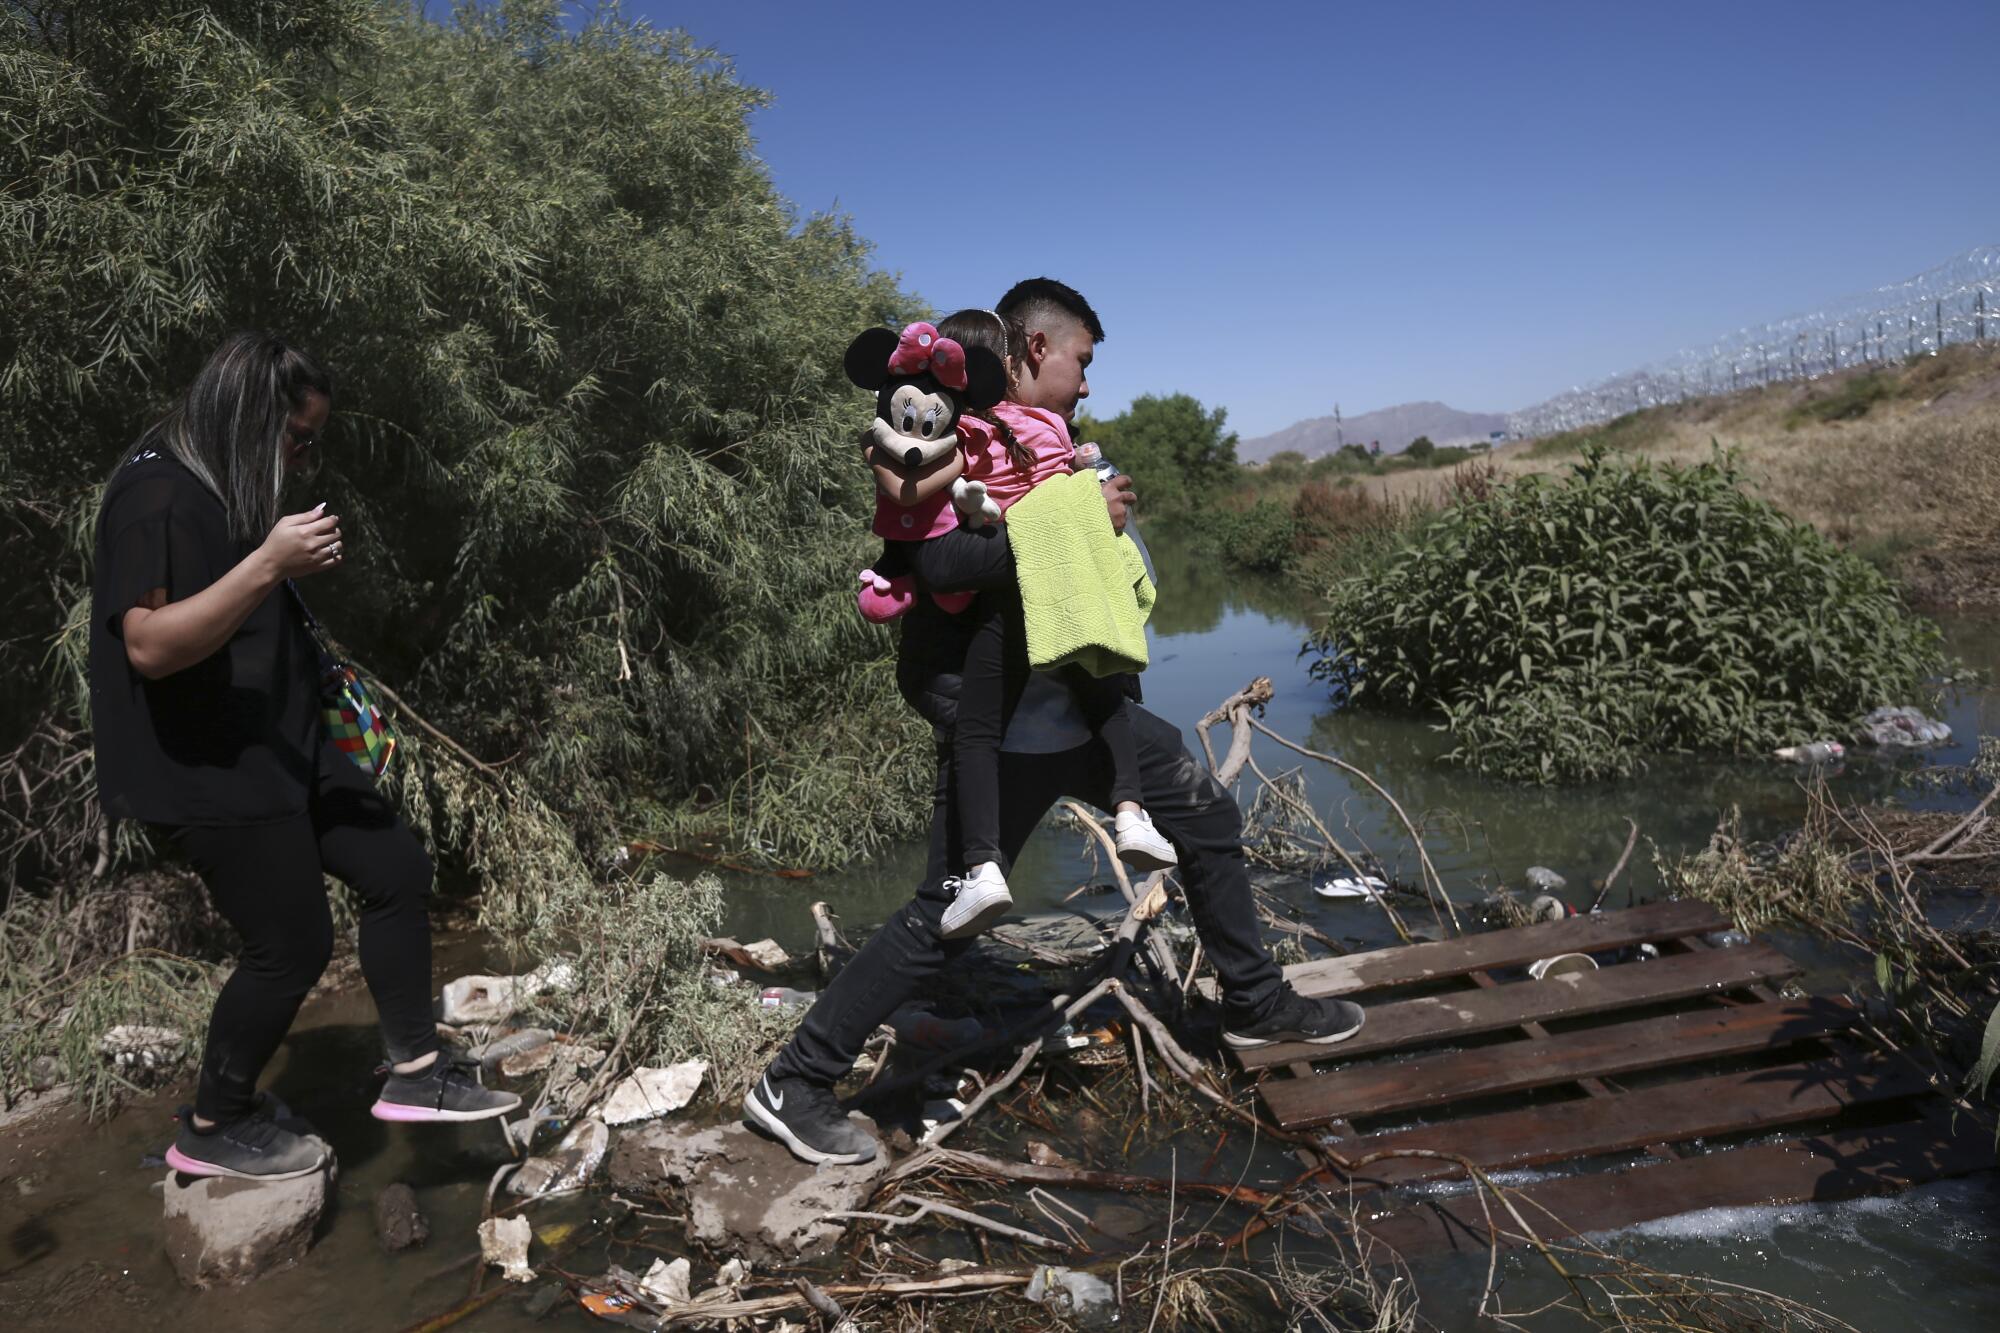 Migrants cross the Rio Grande river into the United States from Ciudad Juarez, Mexico.